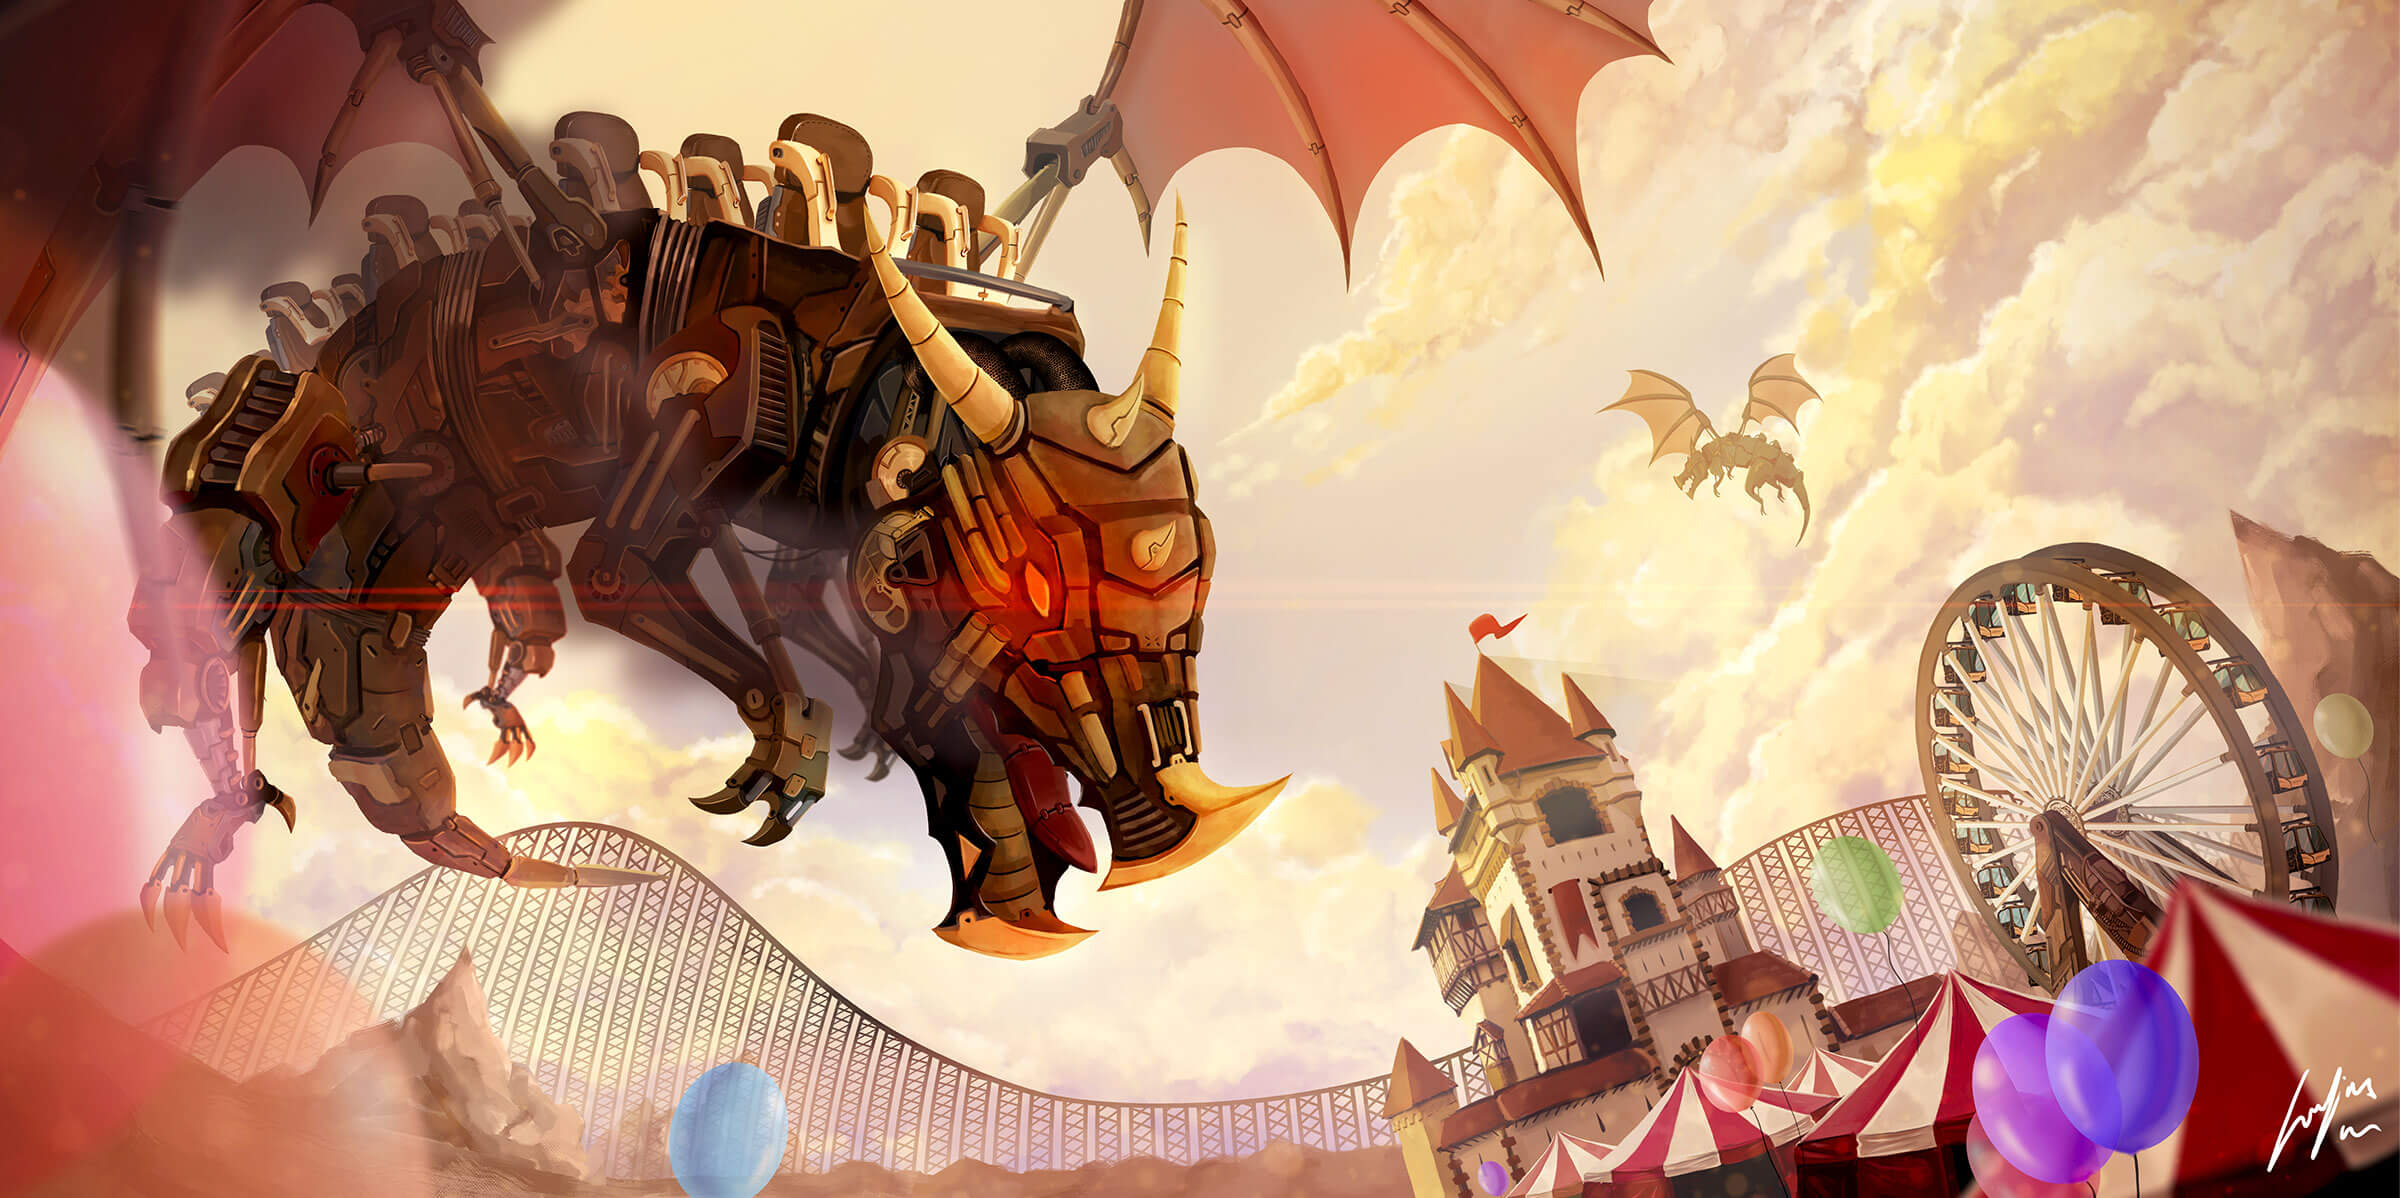 A mechanical dragon flies over an amusement park.